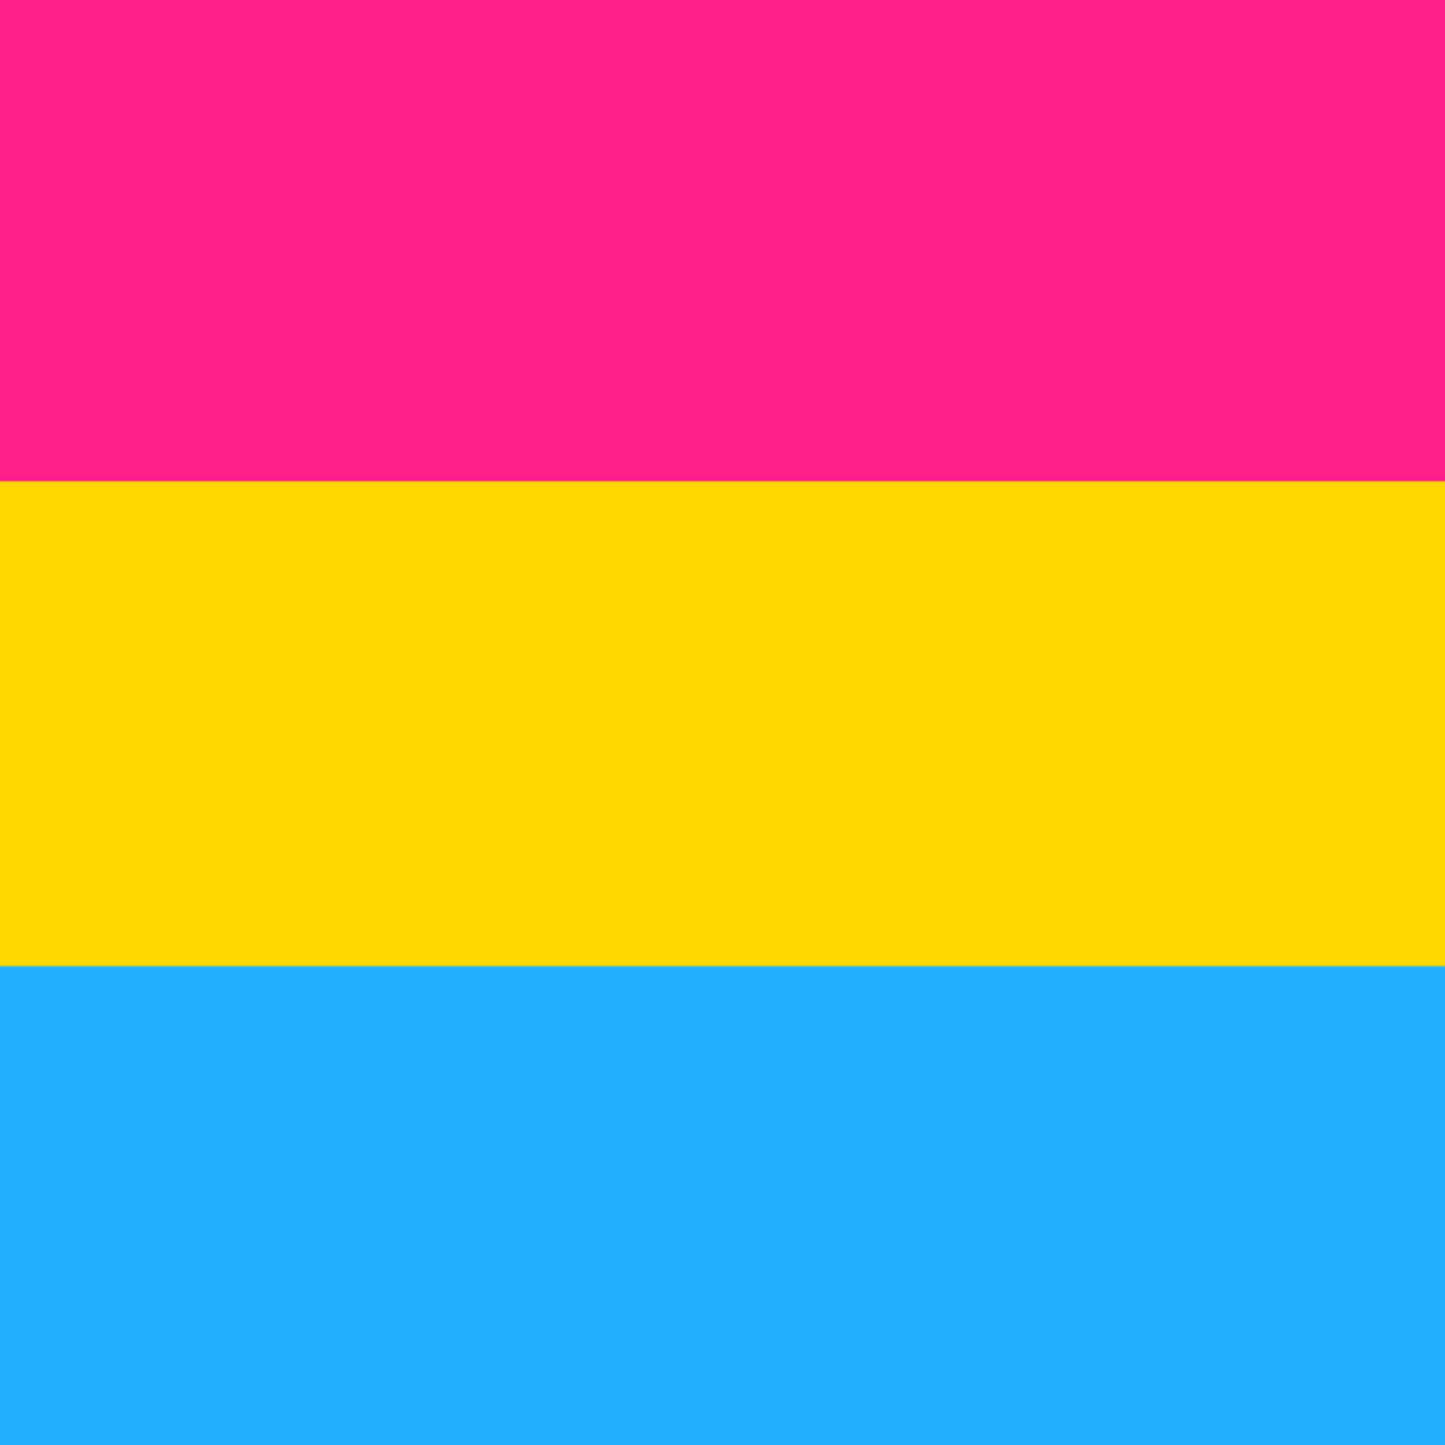 BrickNetty Pride Heart - Pansexual Pride Flag